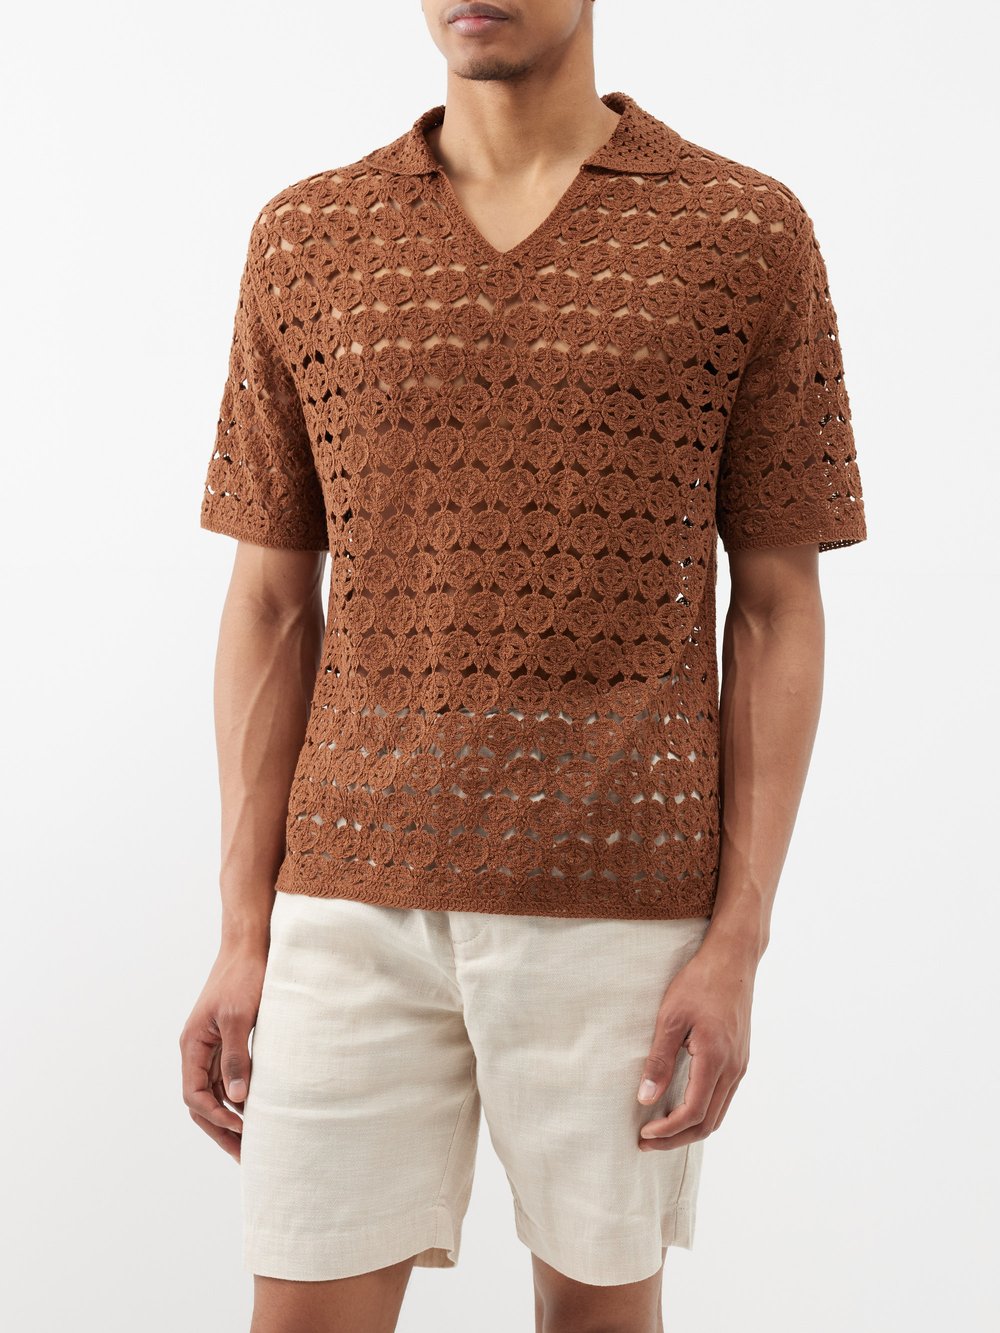 Рубашка-поло из хлопка с цветочным крючком Commas, коричневый